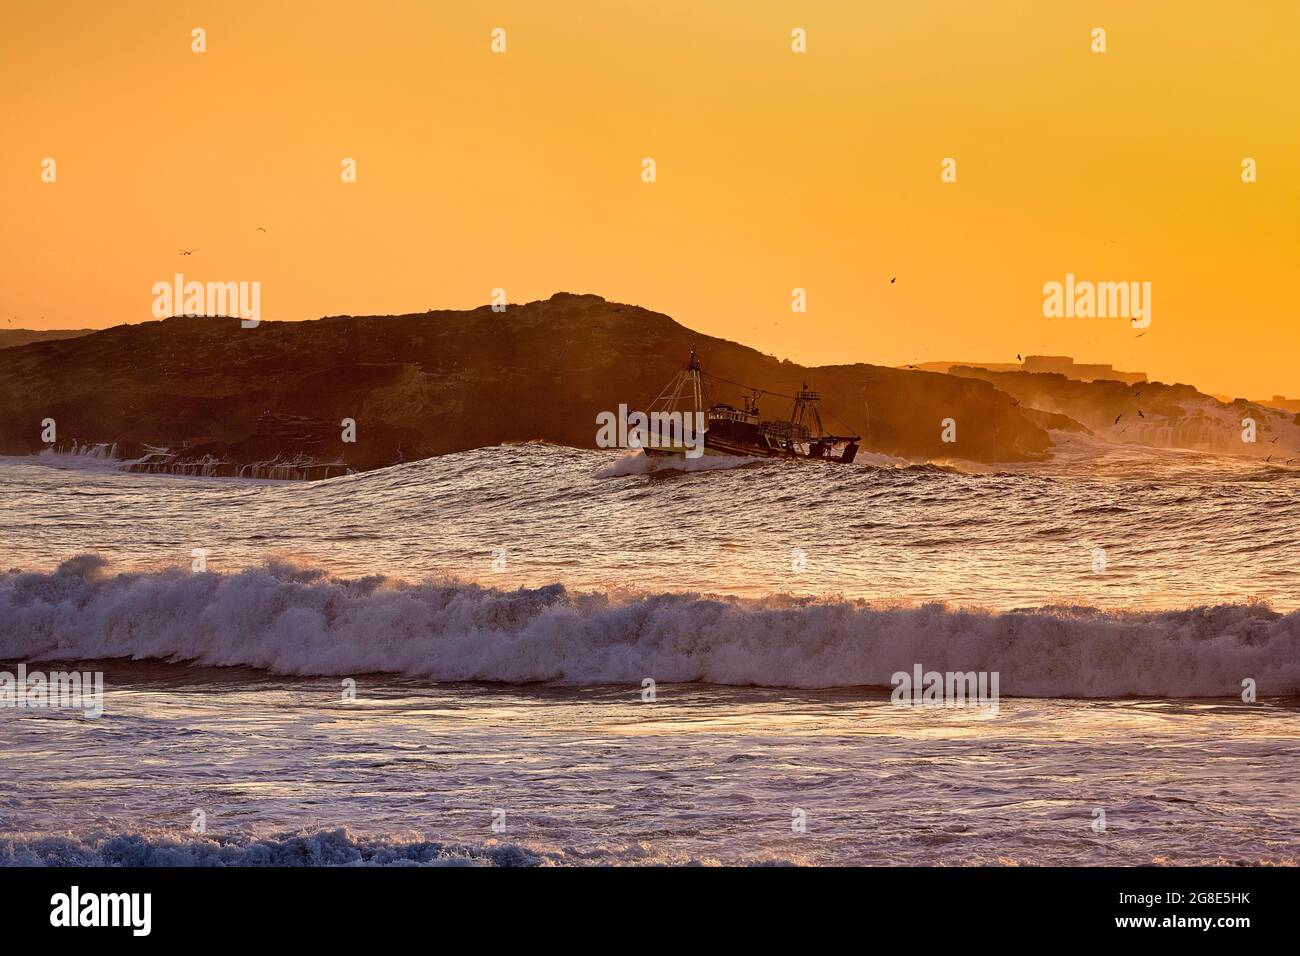 Bateau de pêche avec mouettes dans le surf, coucher de soleil sur l'île de Mogador, côte Atlantique, Essaouira, Marrakech-Safi, Maroc Banque D'Images